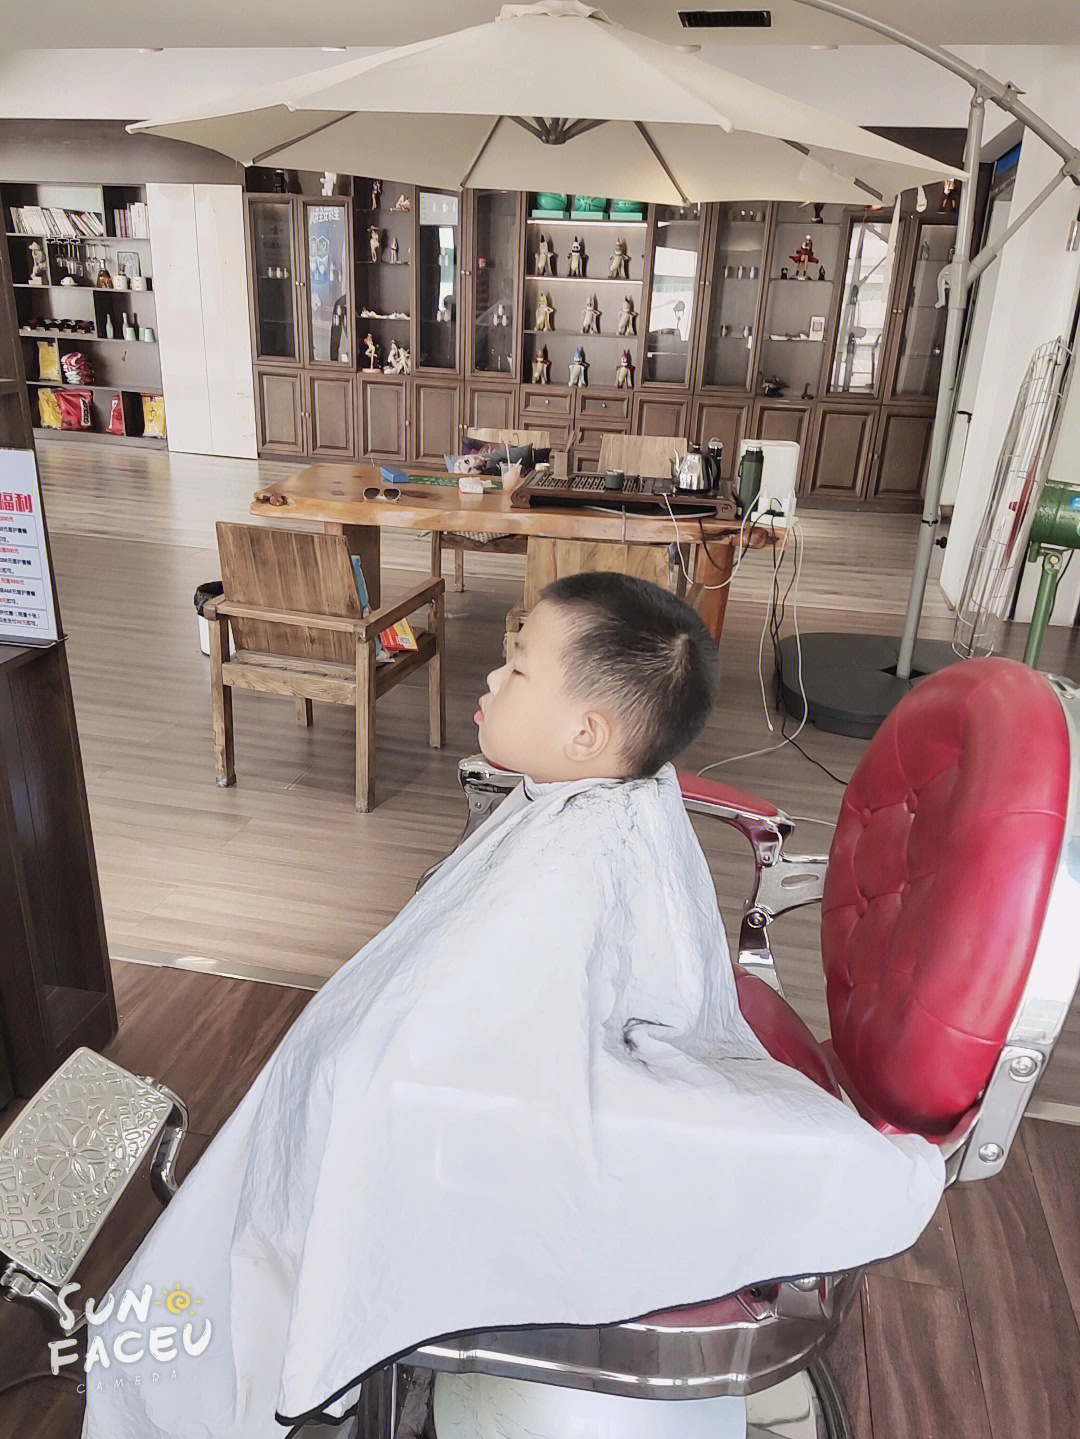 老公工作的样子,给自己儿子剪头发需要更多的耐心